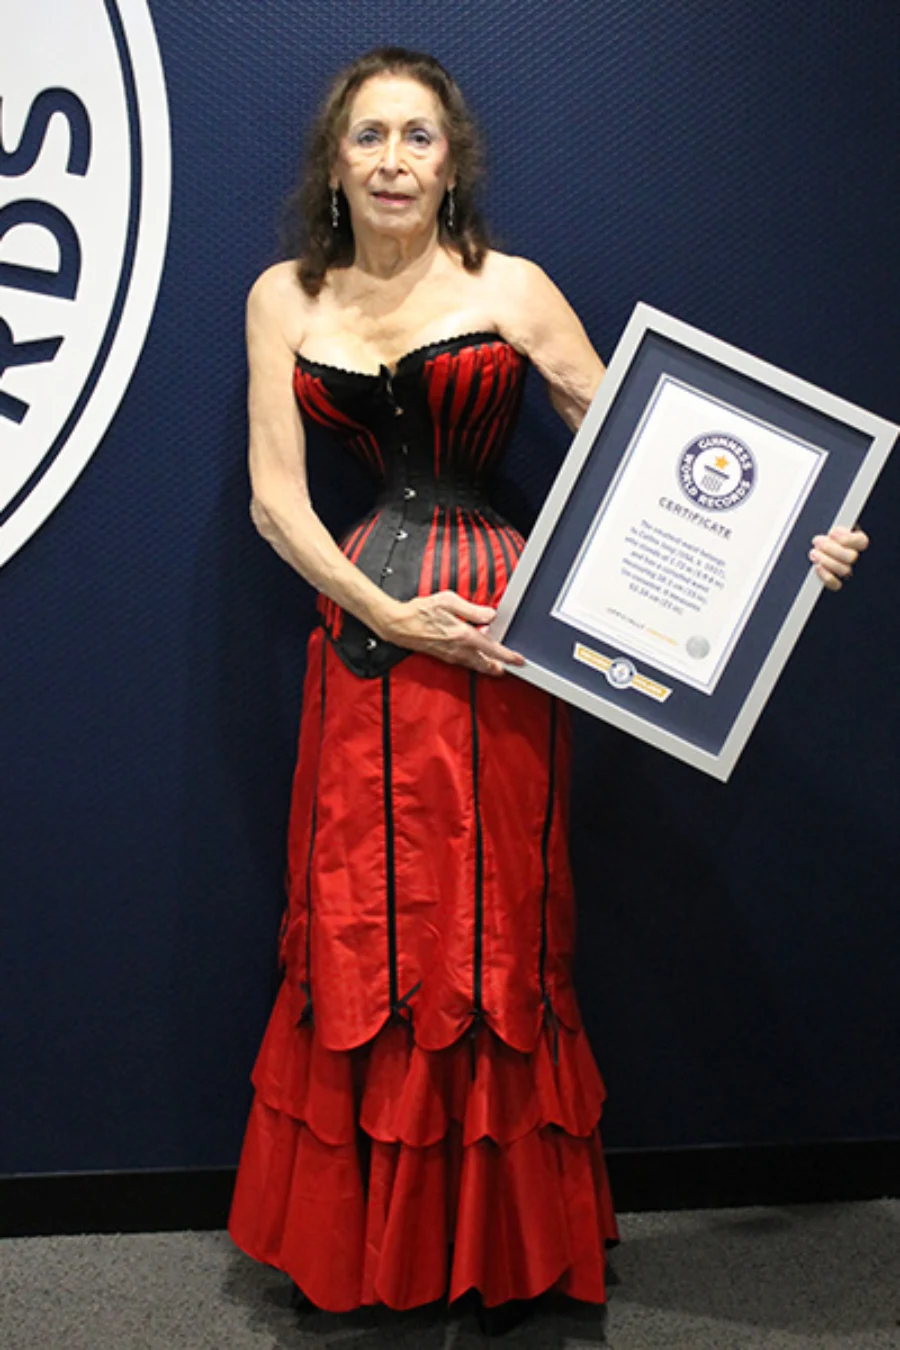 世界上最细的腰女人腰围38.1厘米获得吉尼斯世界纪录